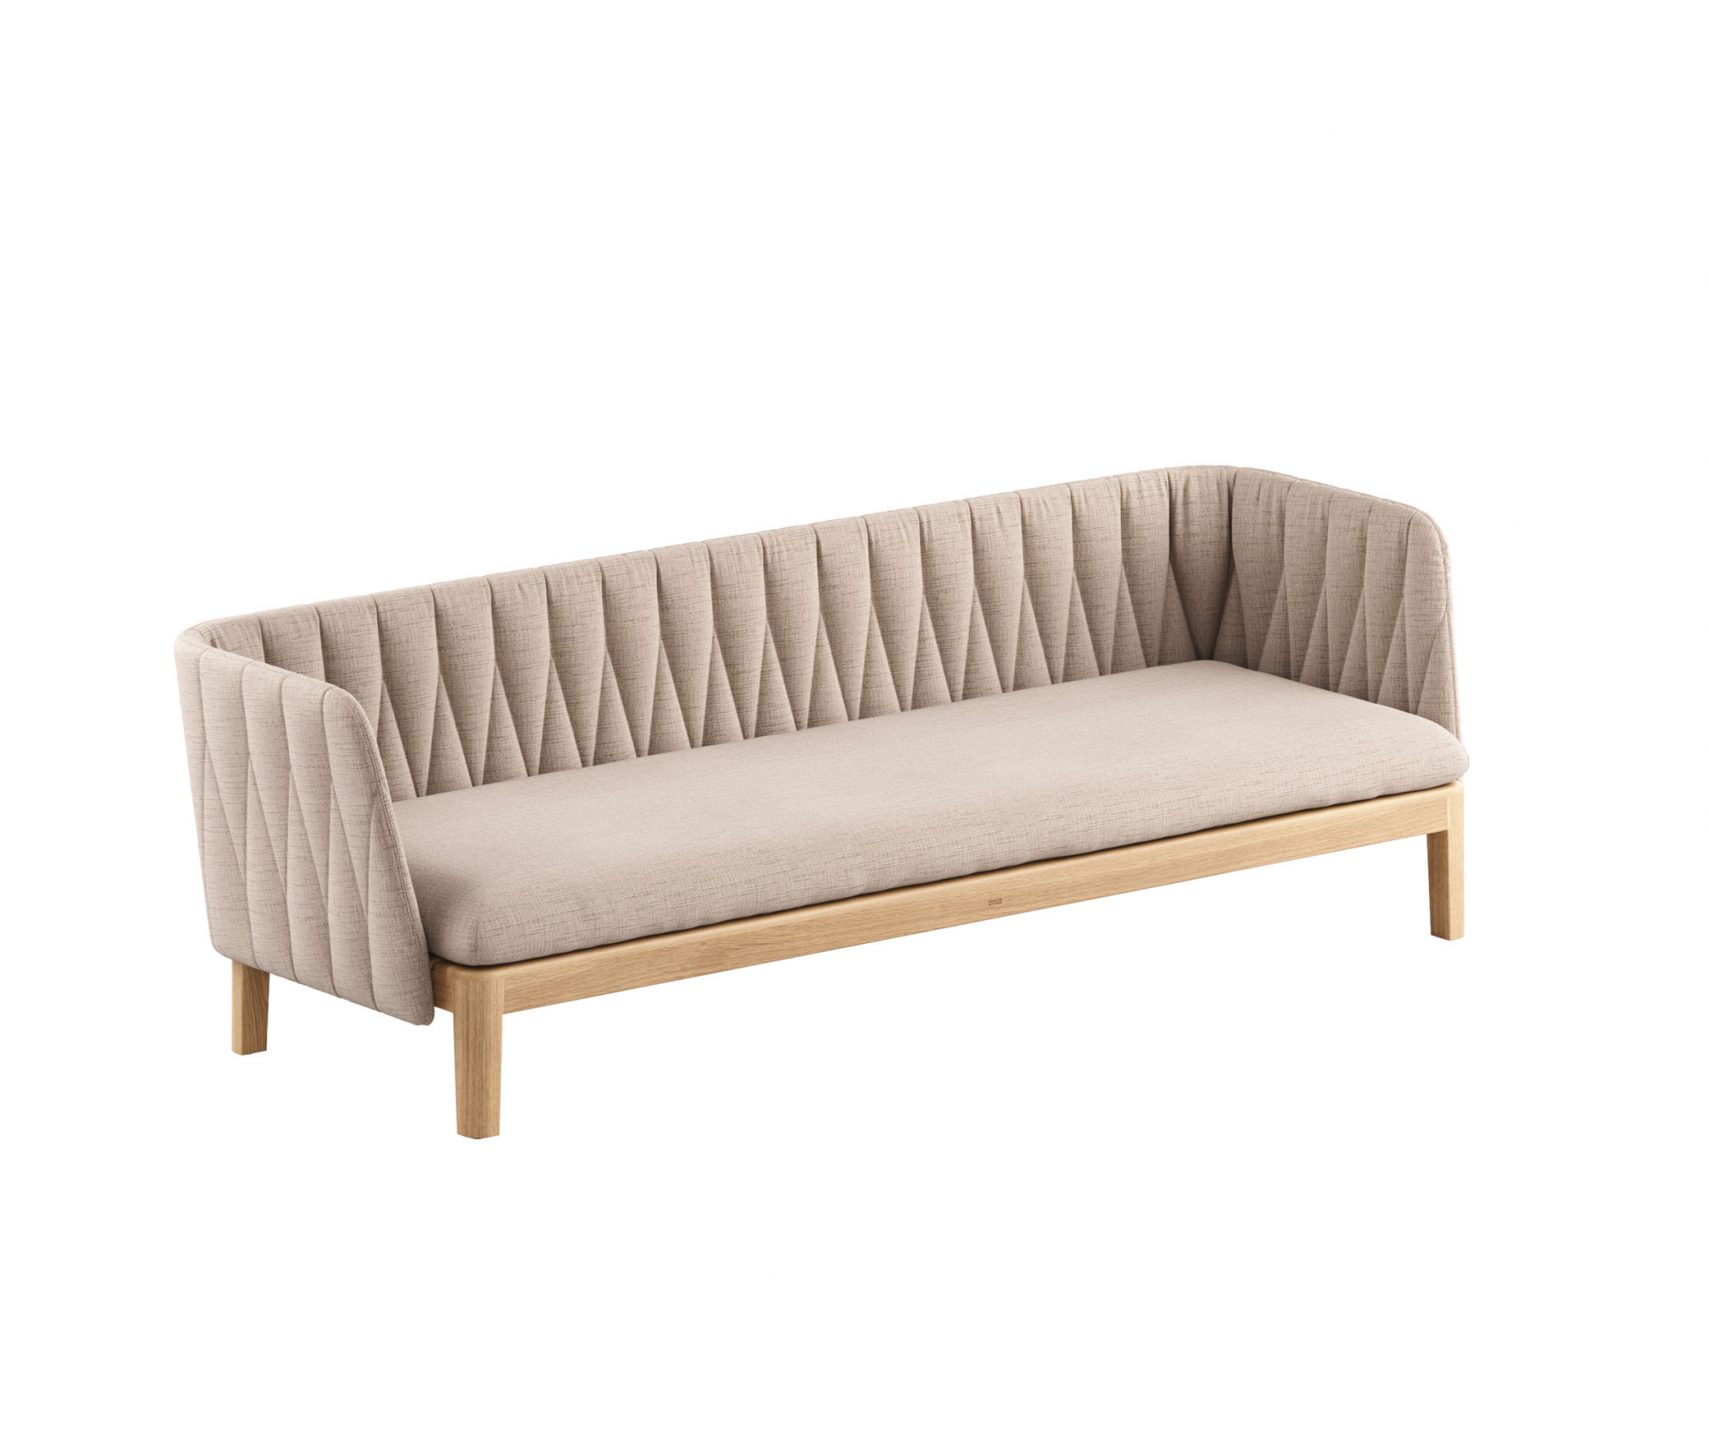 Royal-Botania_Calypso-Lounge-Upholstered-Back_int_products